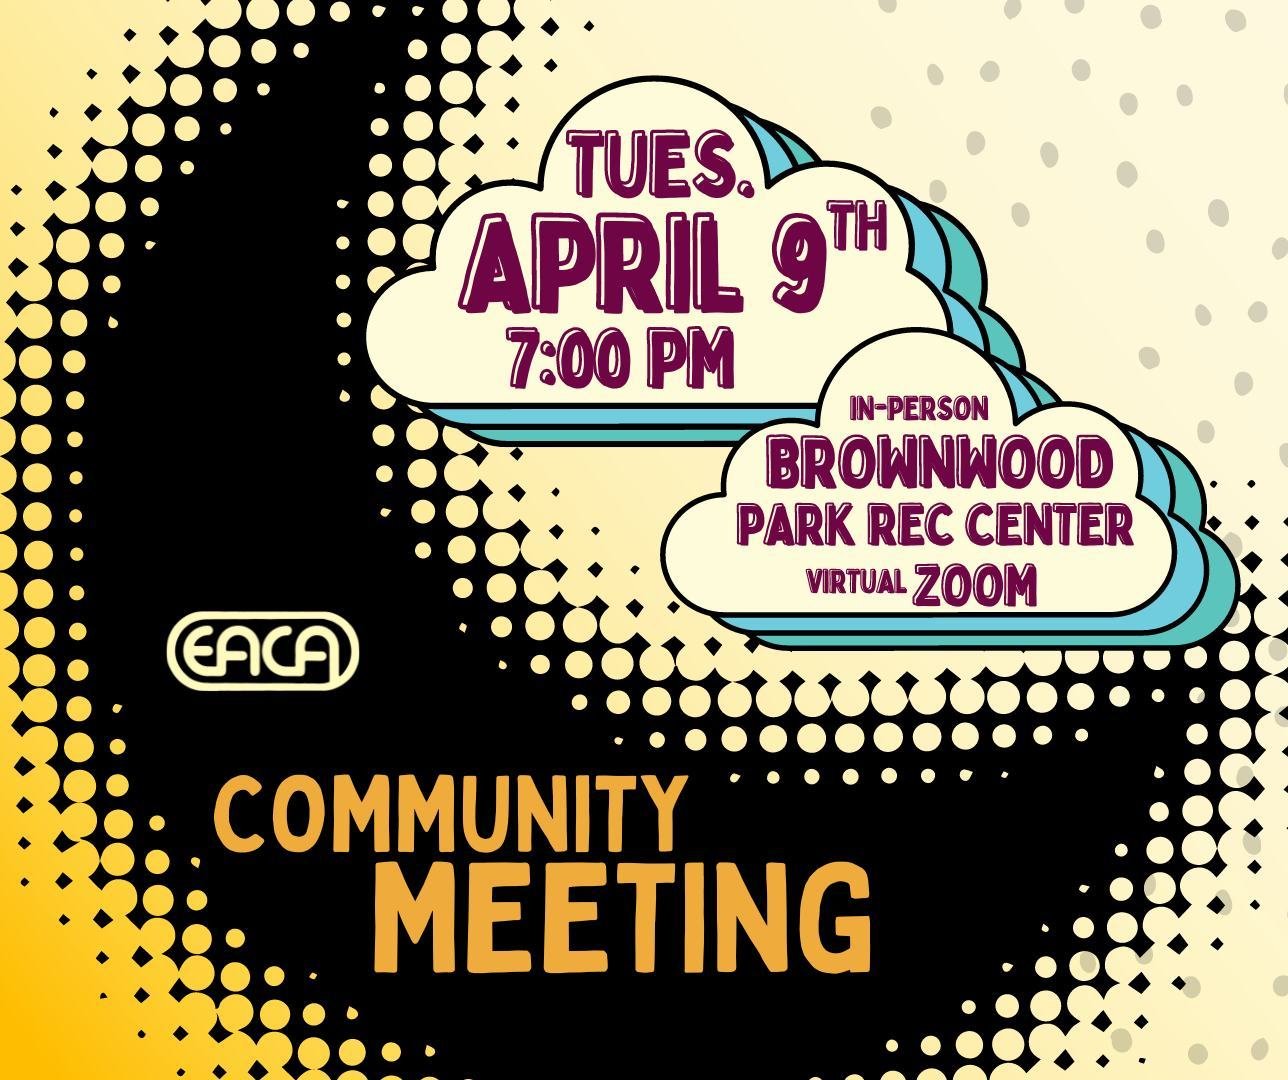 4/9 EACA Community Meeting